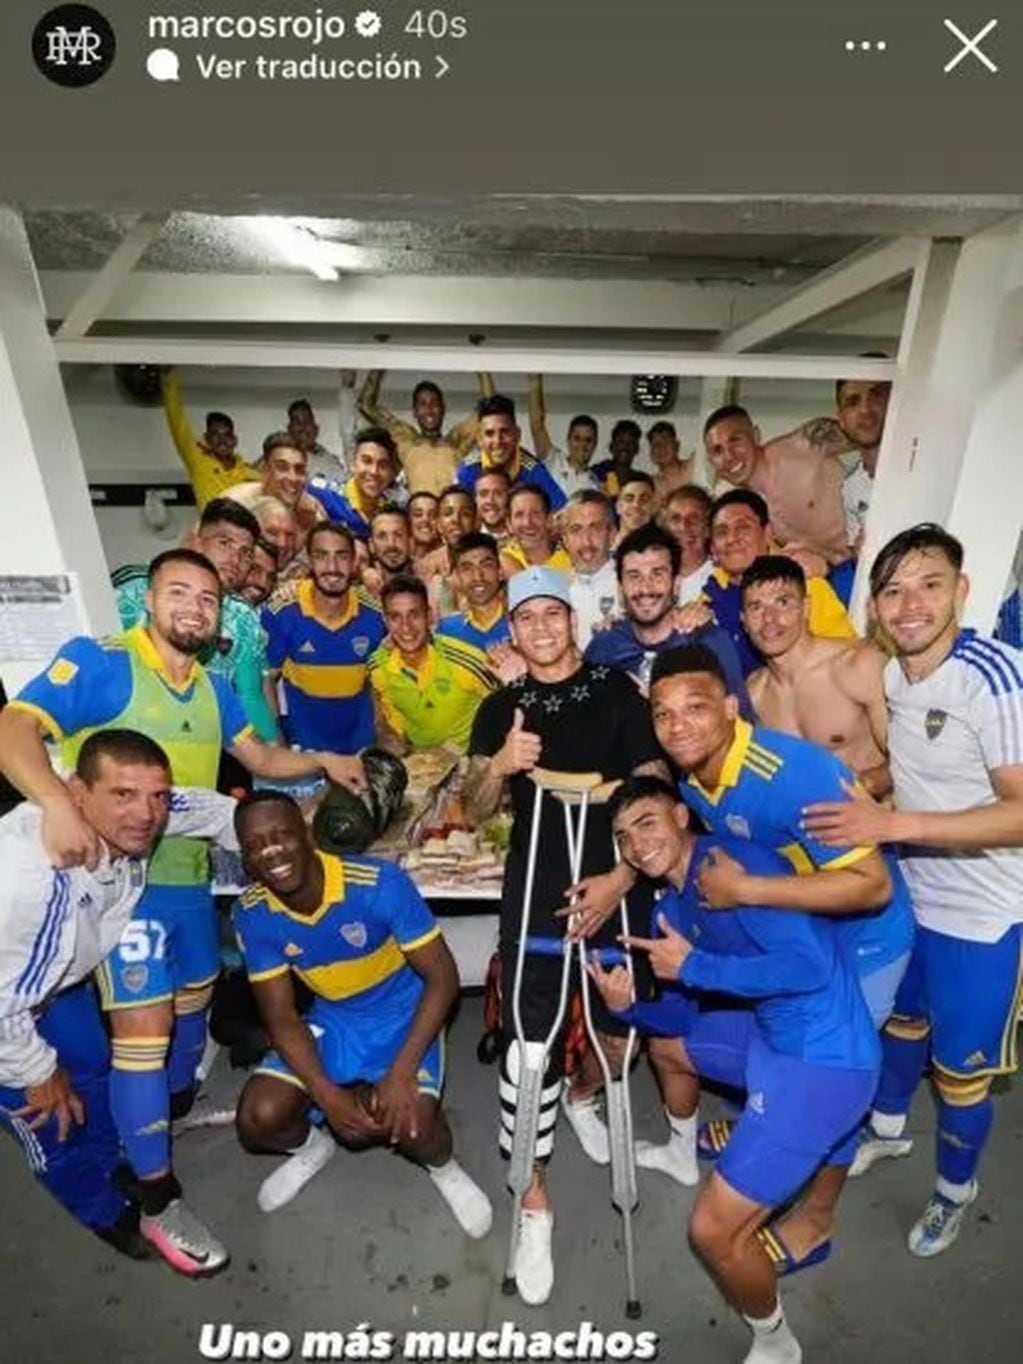 La foto que publicó Marcos Rojo en Instagram para festejar el triunfo de Boca.